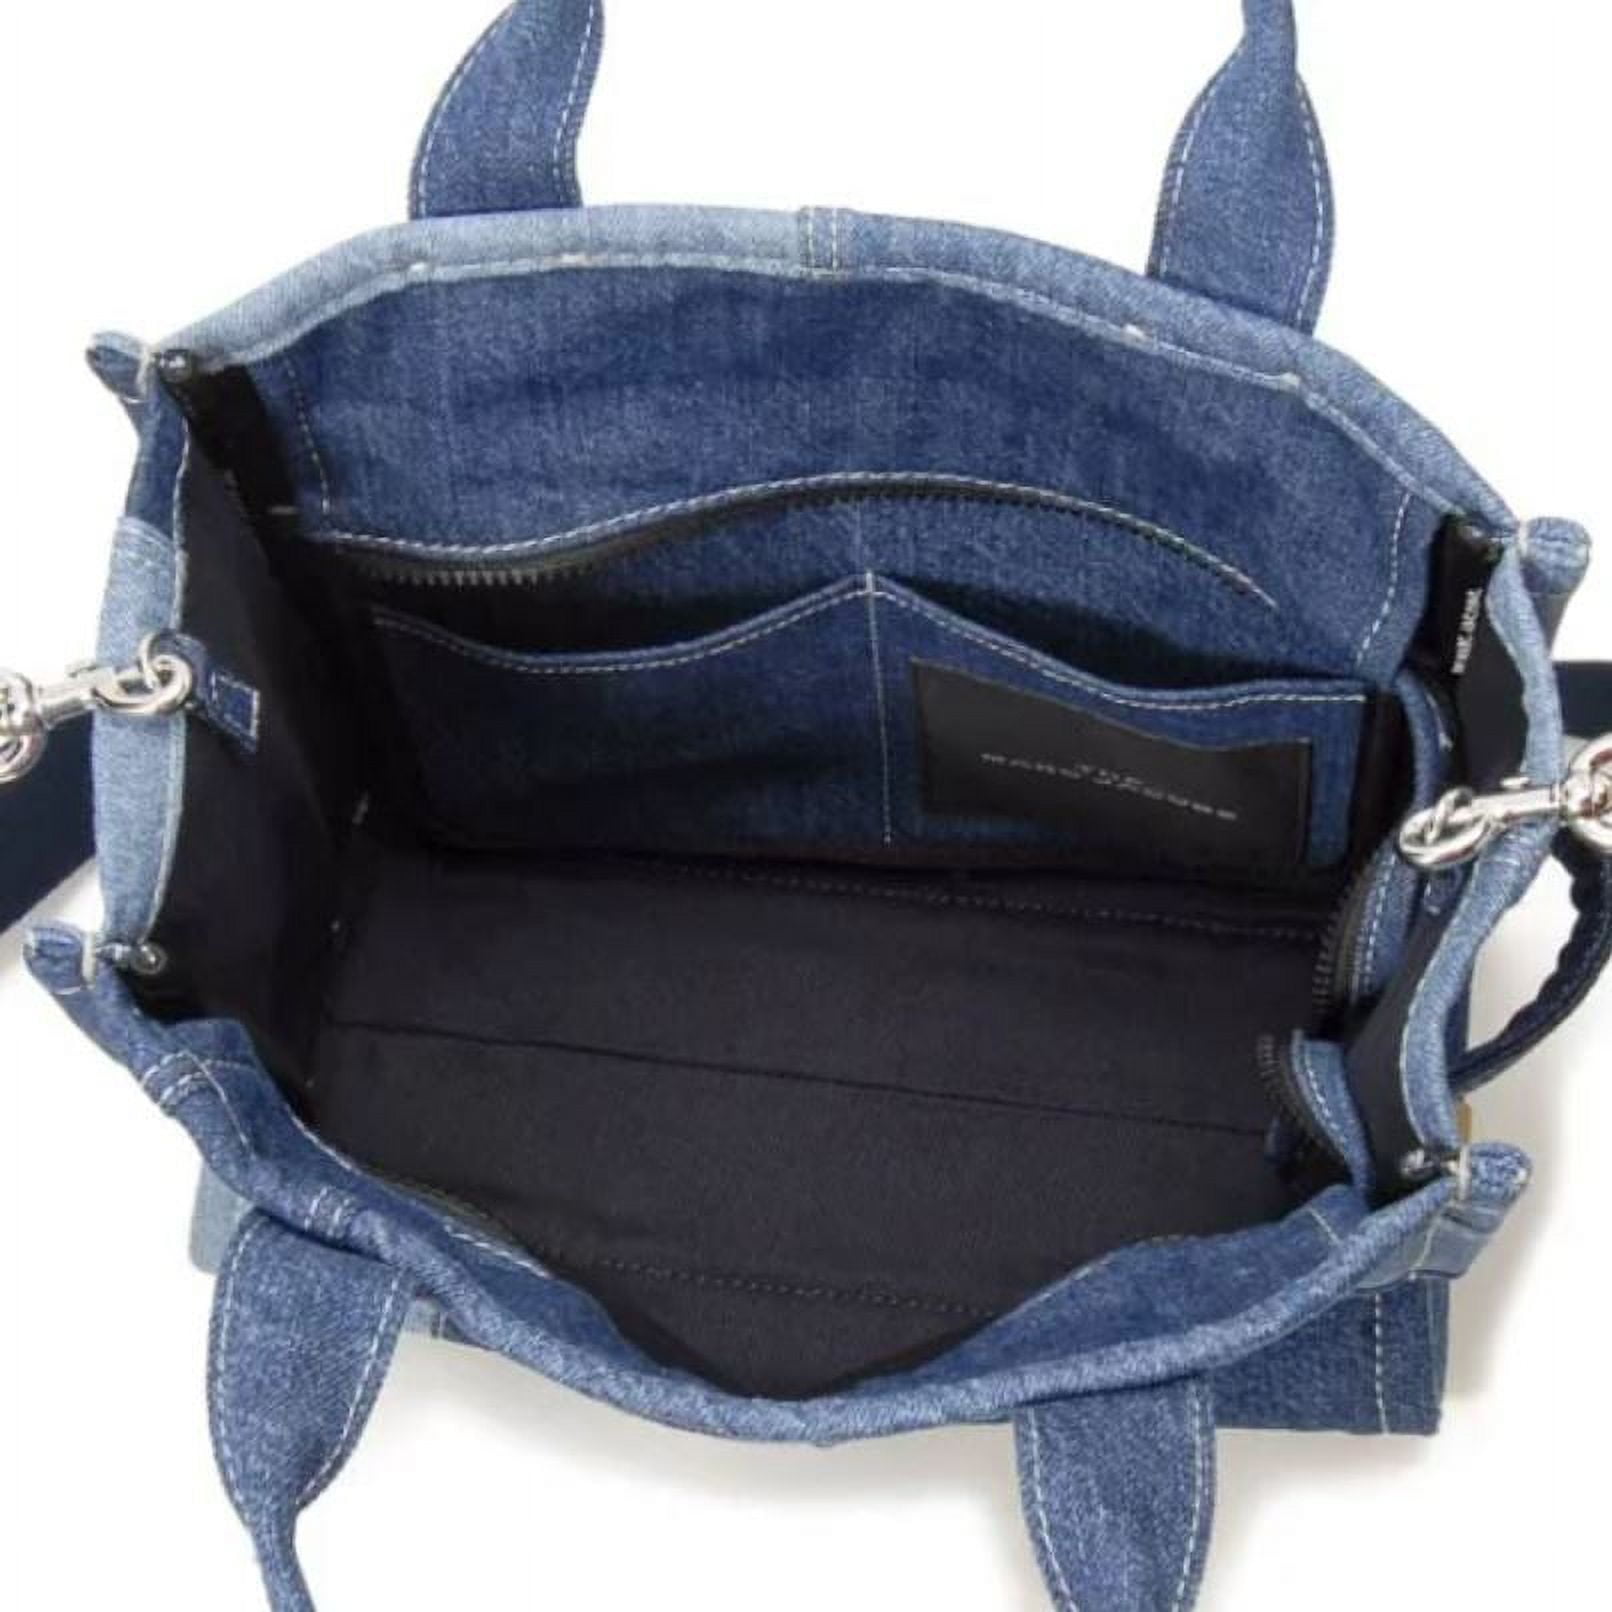 Marc Jacobs The Denim Medium Tote Bag - Blue Denim • Price »